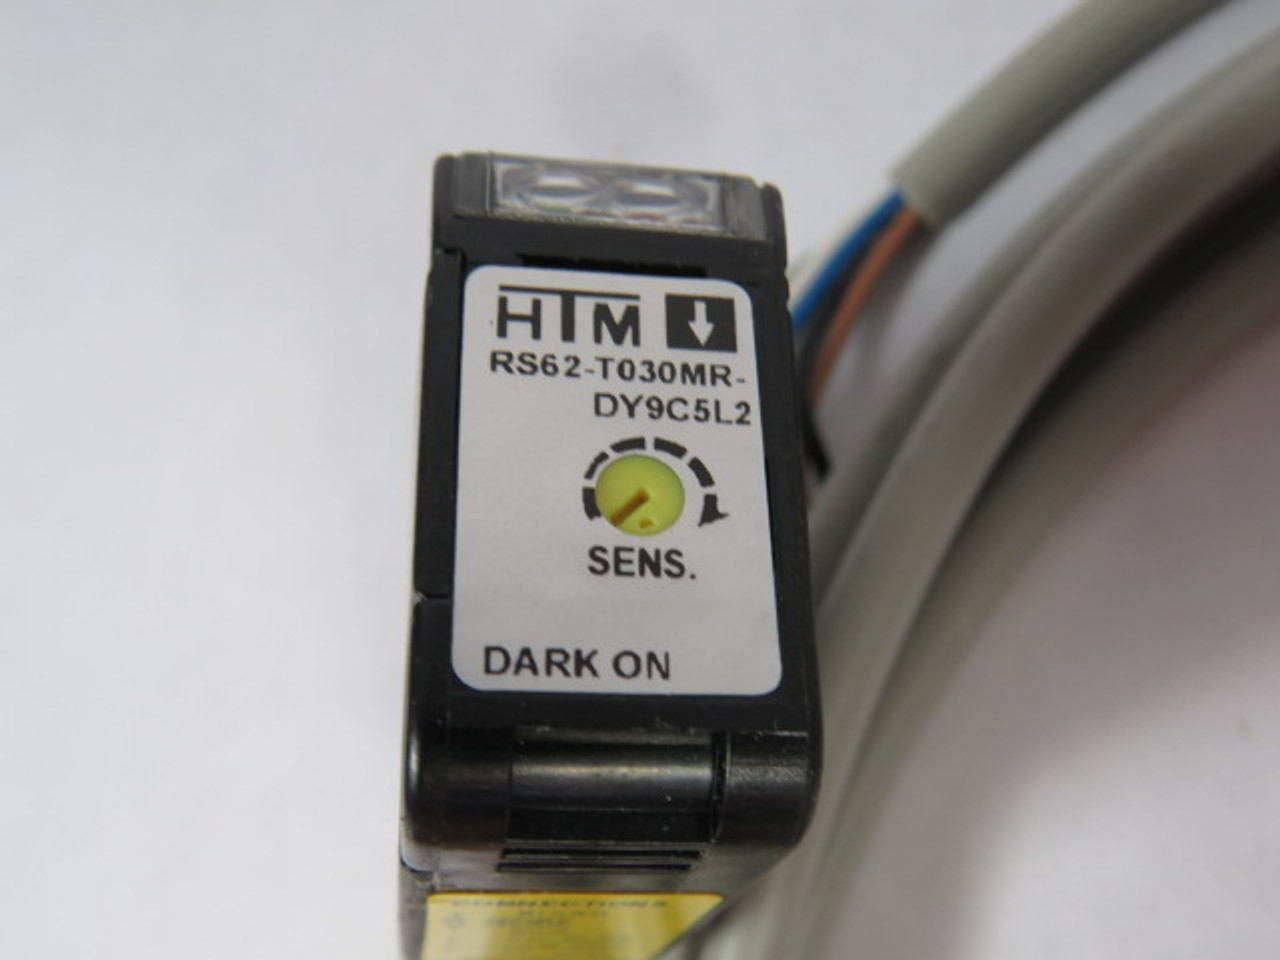 HTM RS62-T030MR-DY9C5L2 Photoelectric Sensor 12-240VDC ! NEW !